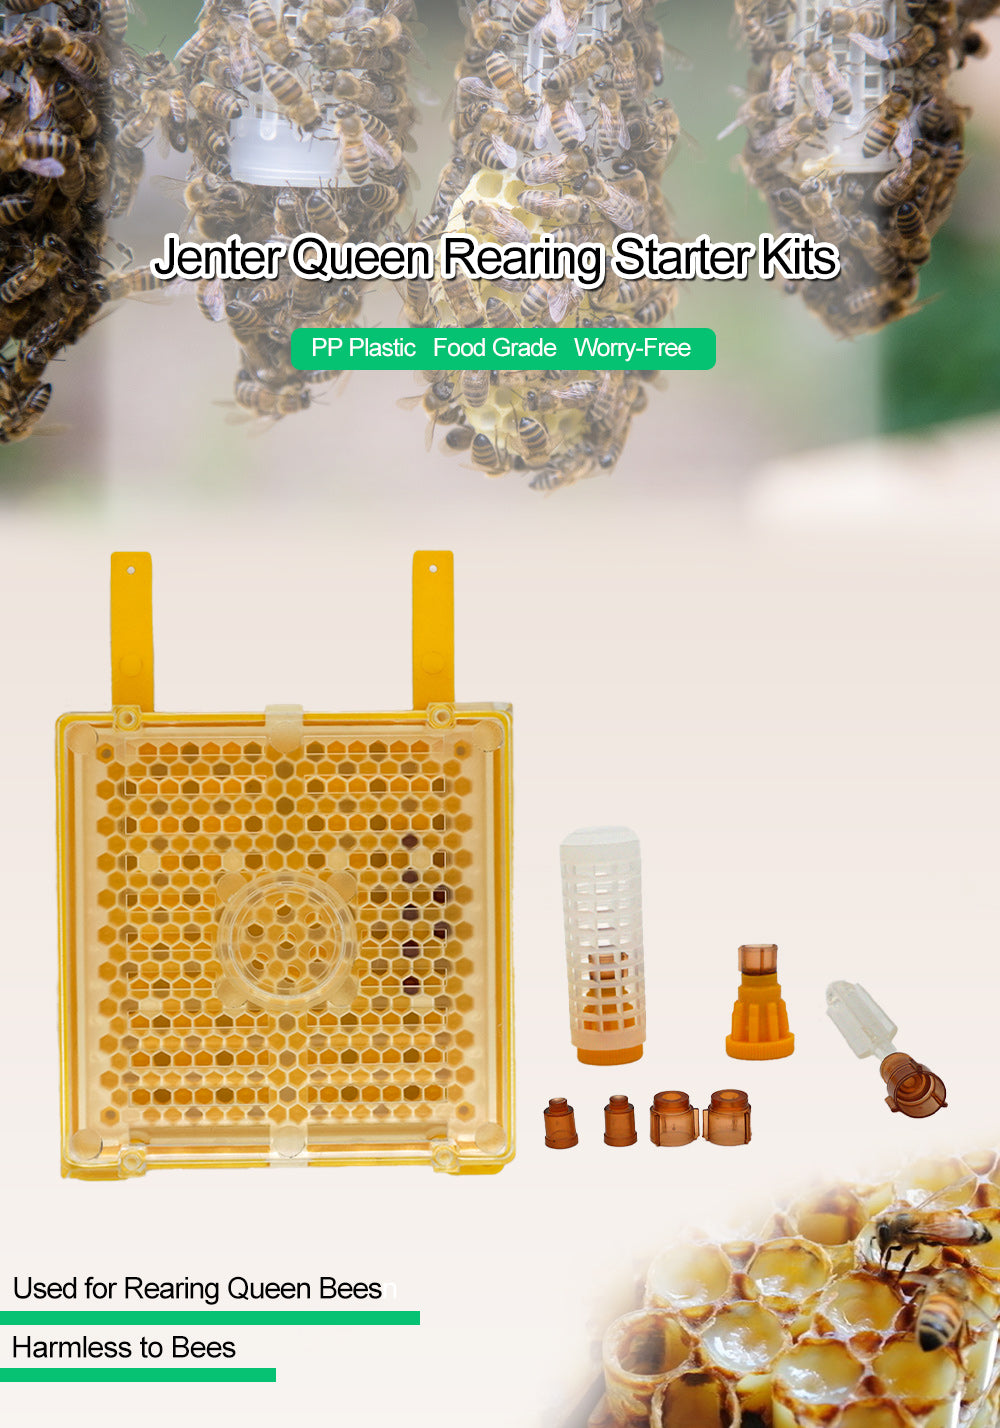 Karl Jenter Queen Rearing Kit System